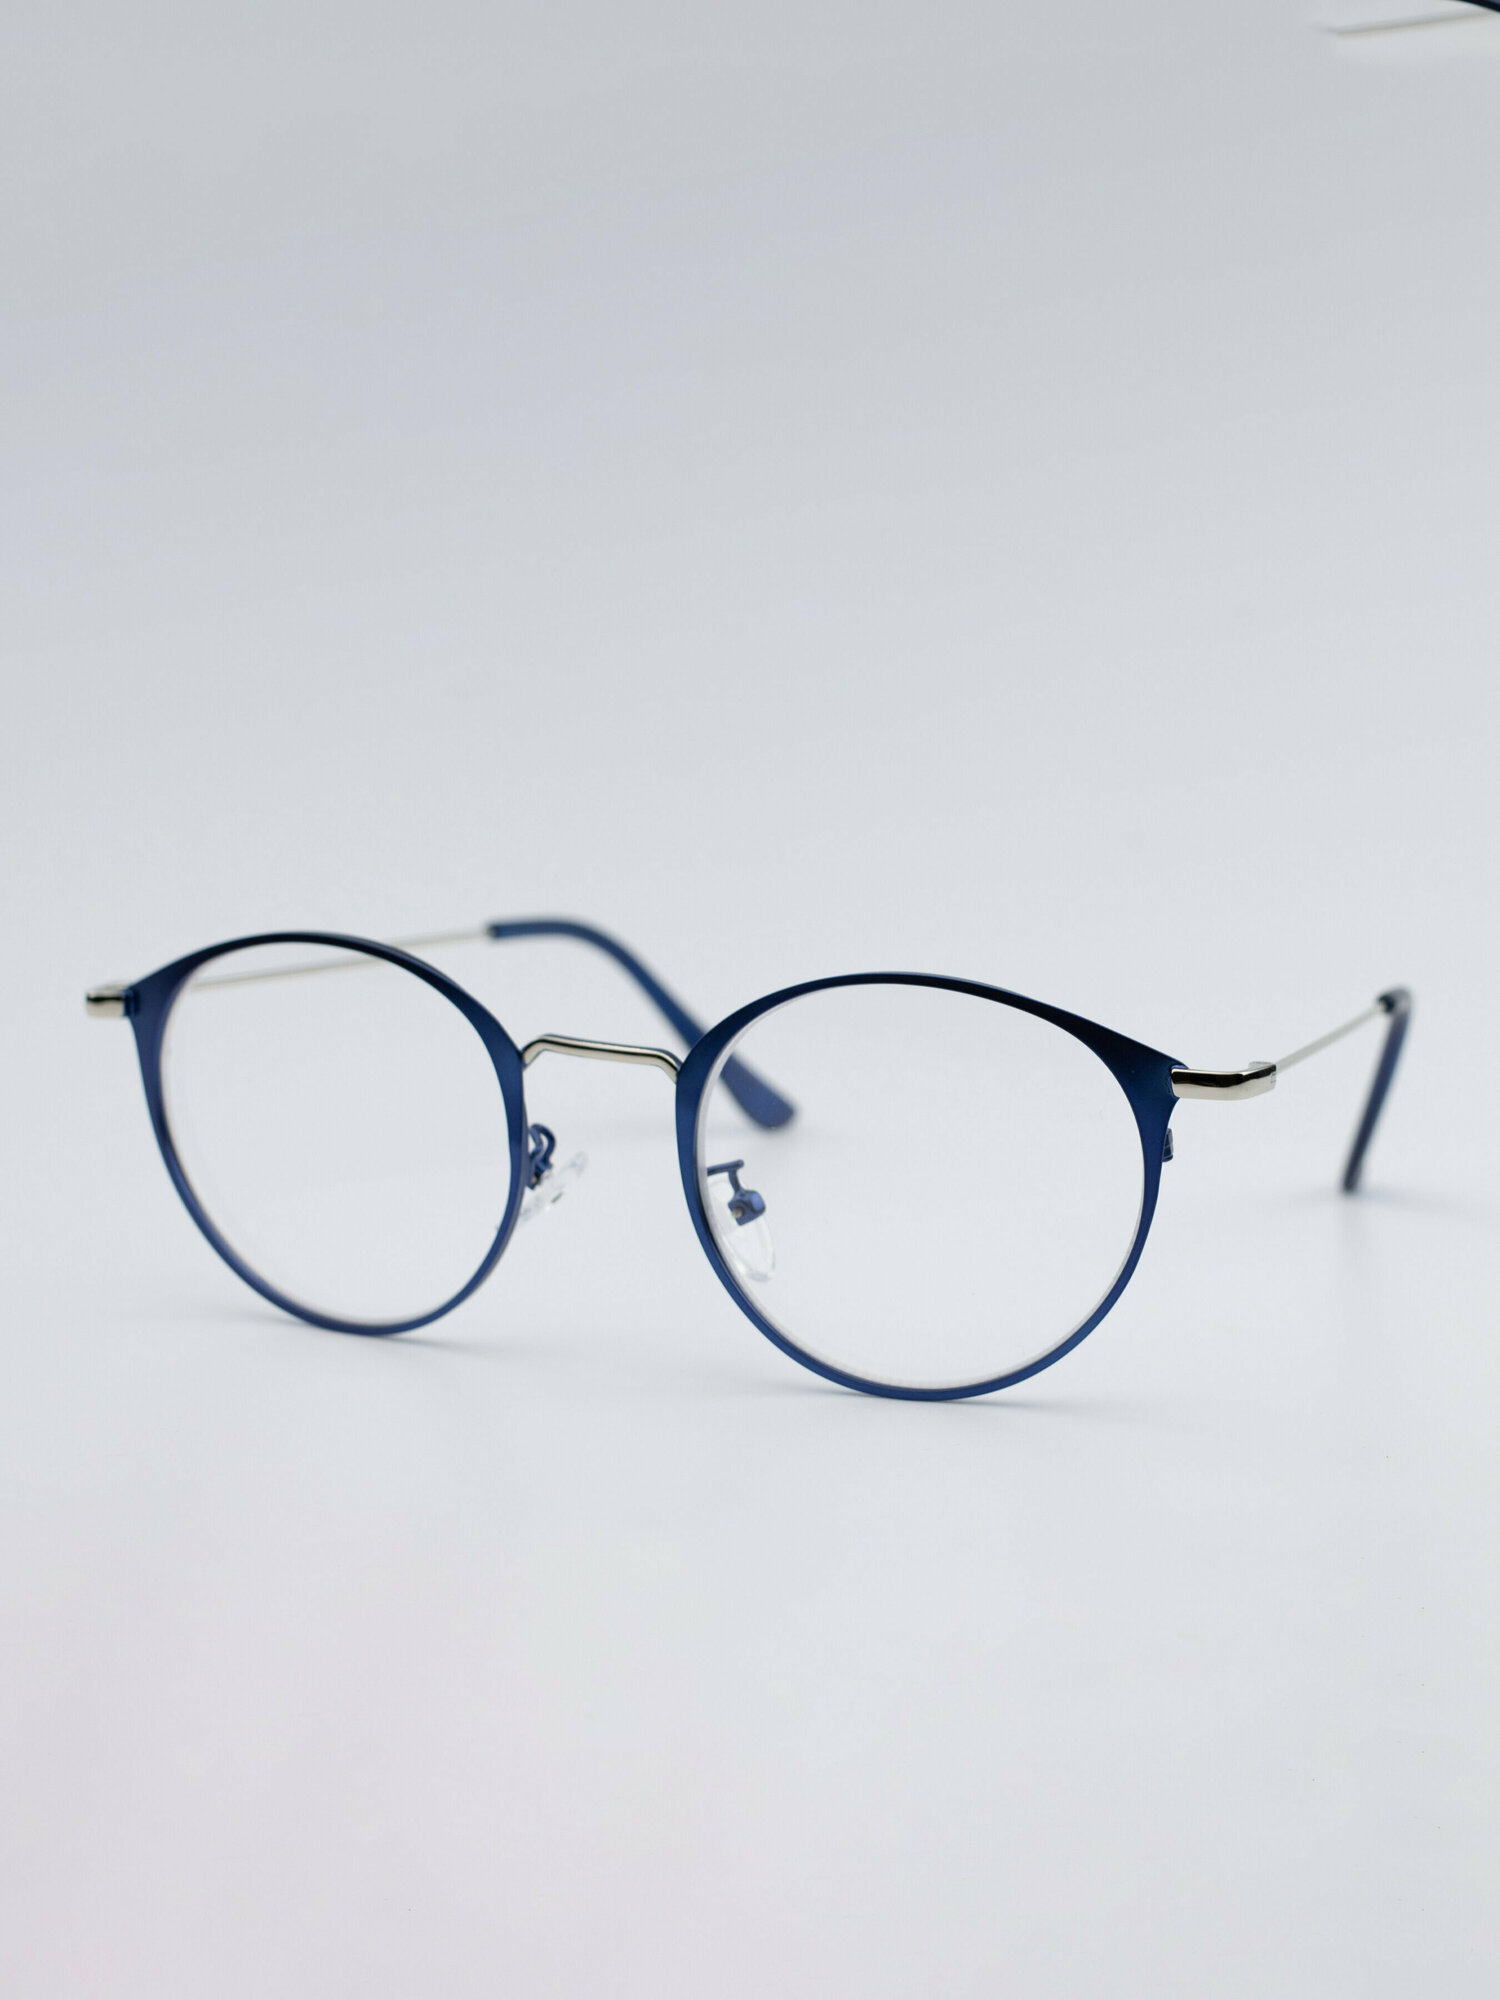 Очки для зрения +3 / Женские корригирующие очки для чтения с диоптрией +3,0